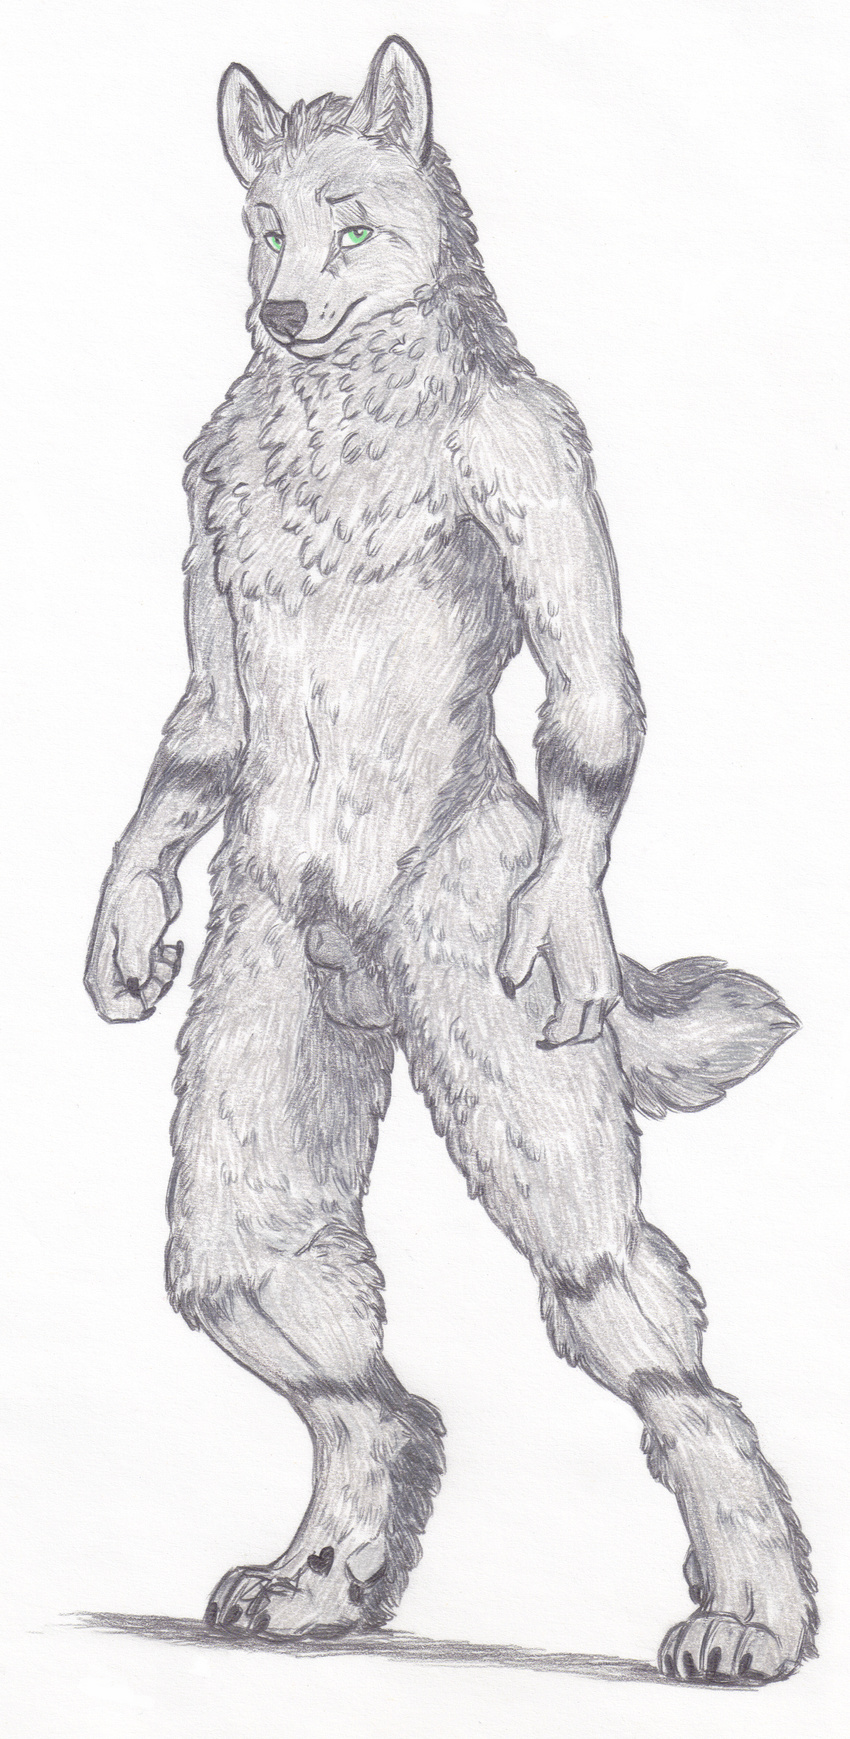 animal_genitalia anthro canine fur green_eyes grey_fur male mammal nude sheath simple_background skyfifer traditional_media_(artwork) wolf